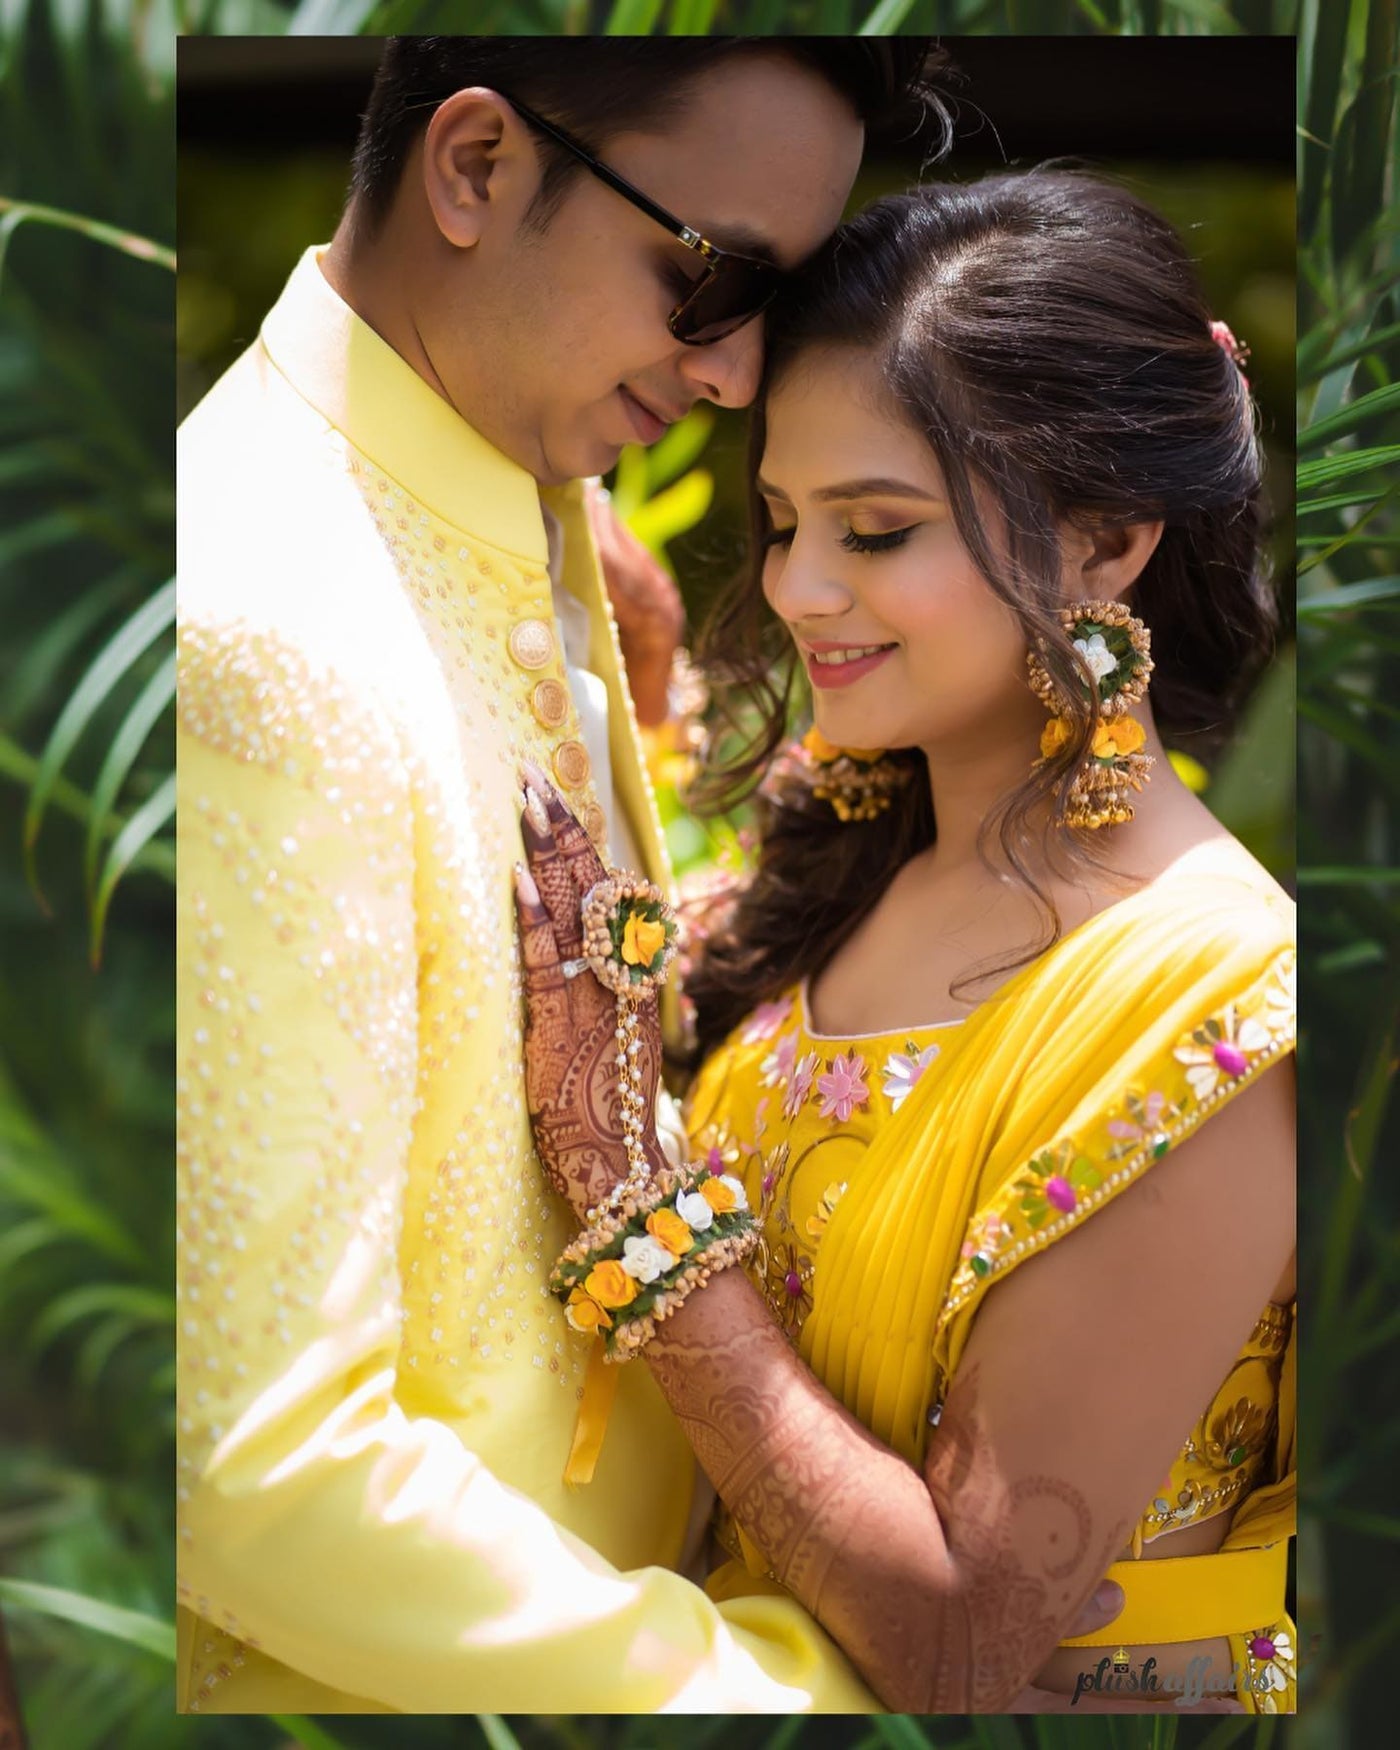 Lamansh Ring Set Yellow White Gold / Fabric / Haldi ,Wedding,Engagement LAMANSH® Floral 🌺 Bracelet Attached with Ring Set for Engagement / Haldi / Floral Accessories set